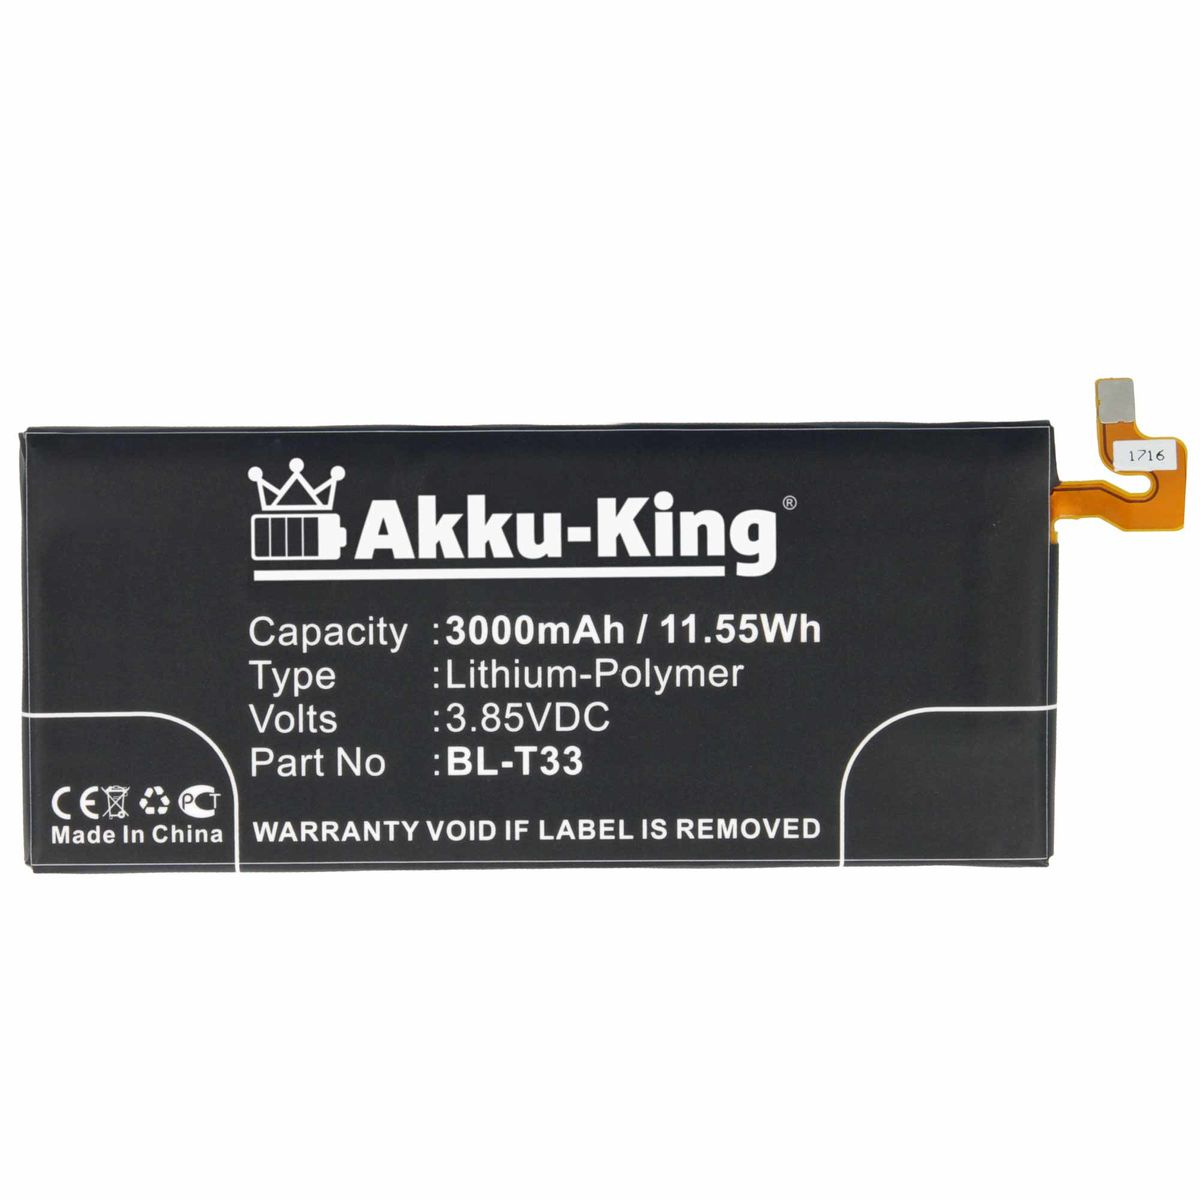 AKKU-KING Akku kompatibel mit BL-T33 3000mAh Handy-Akku, Li-Polymer LG 3.85 Volt